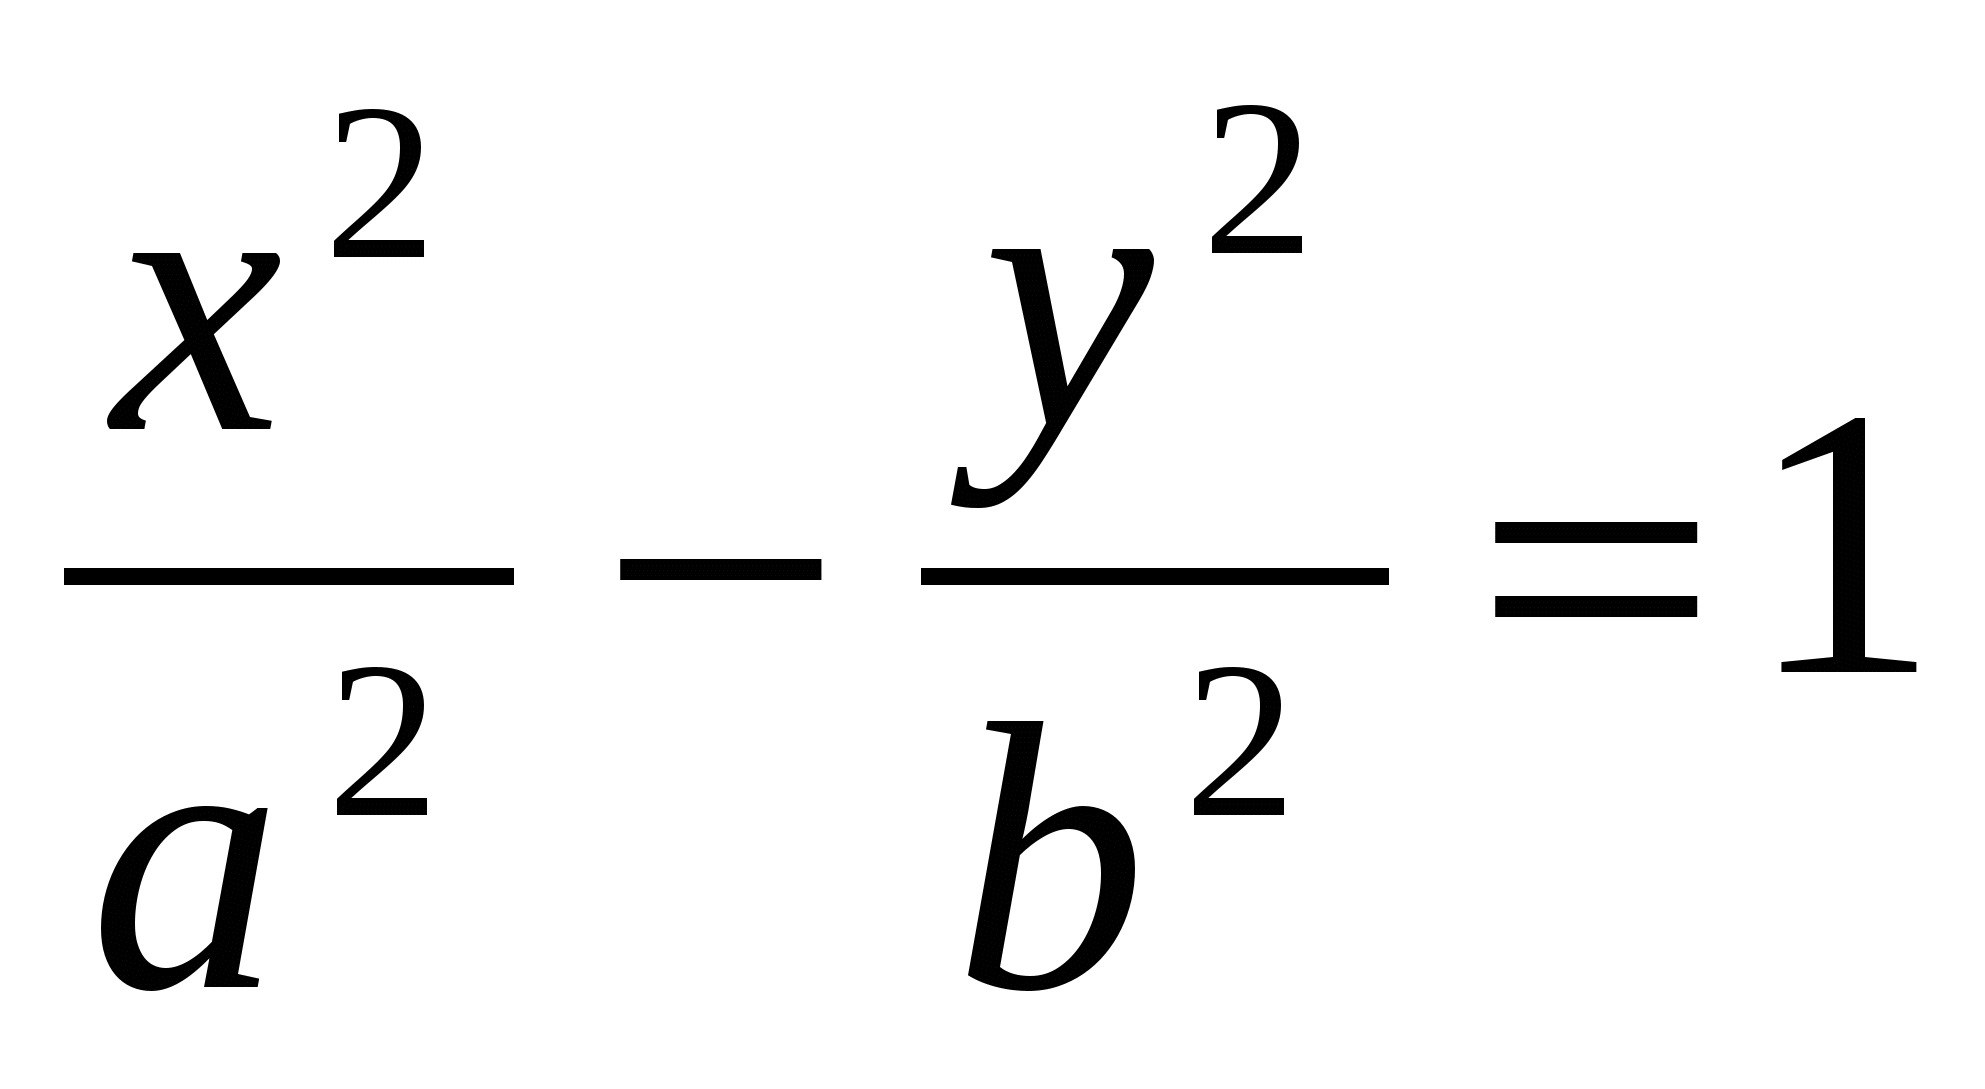 МЕТОДИЧЕСКИЯ РАЗРАБОТКА по дисциплине «Элементы высшей математики» на тему «Гипербола и ее уравнение»